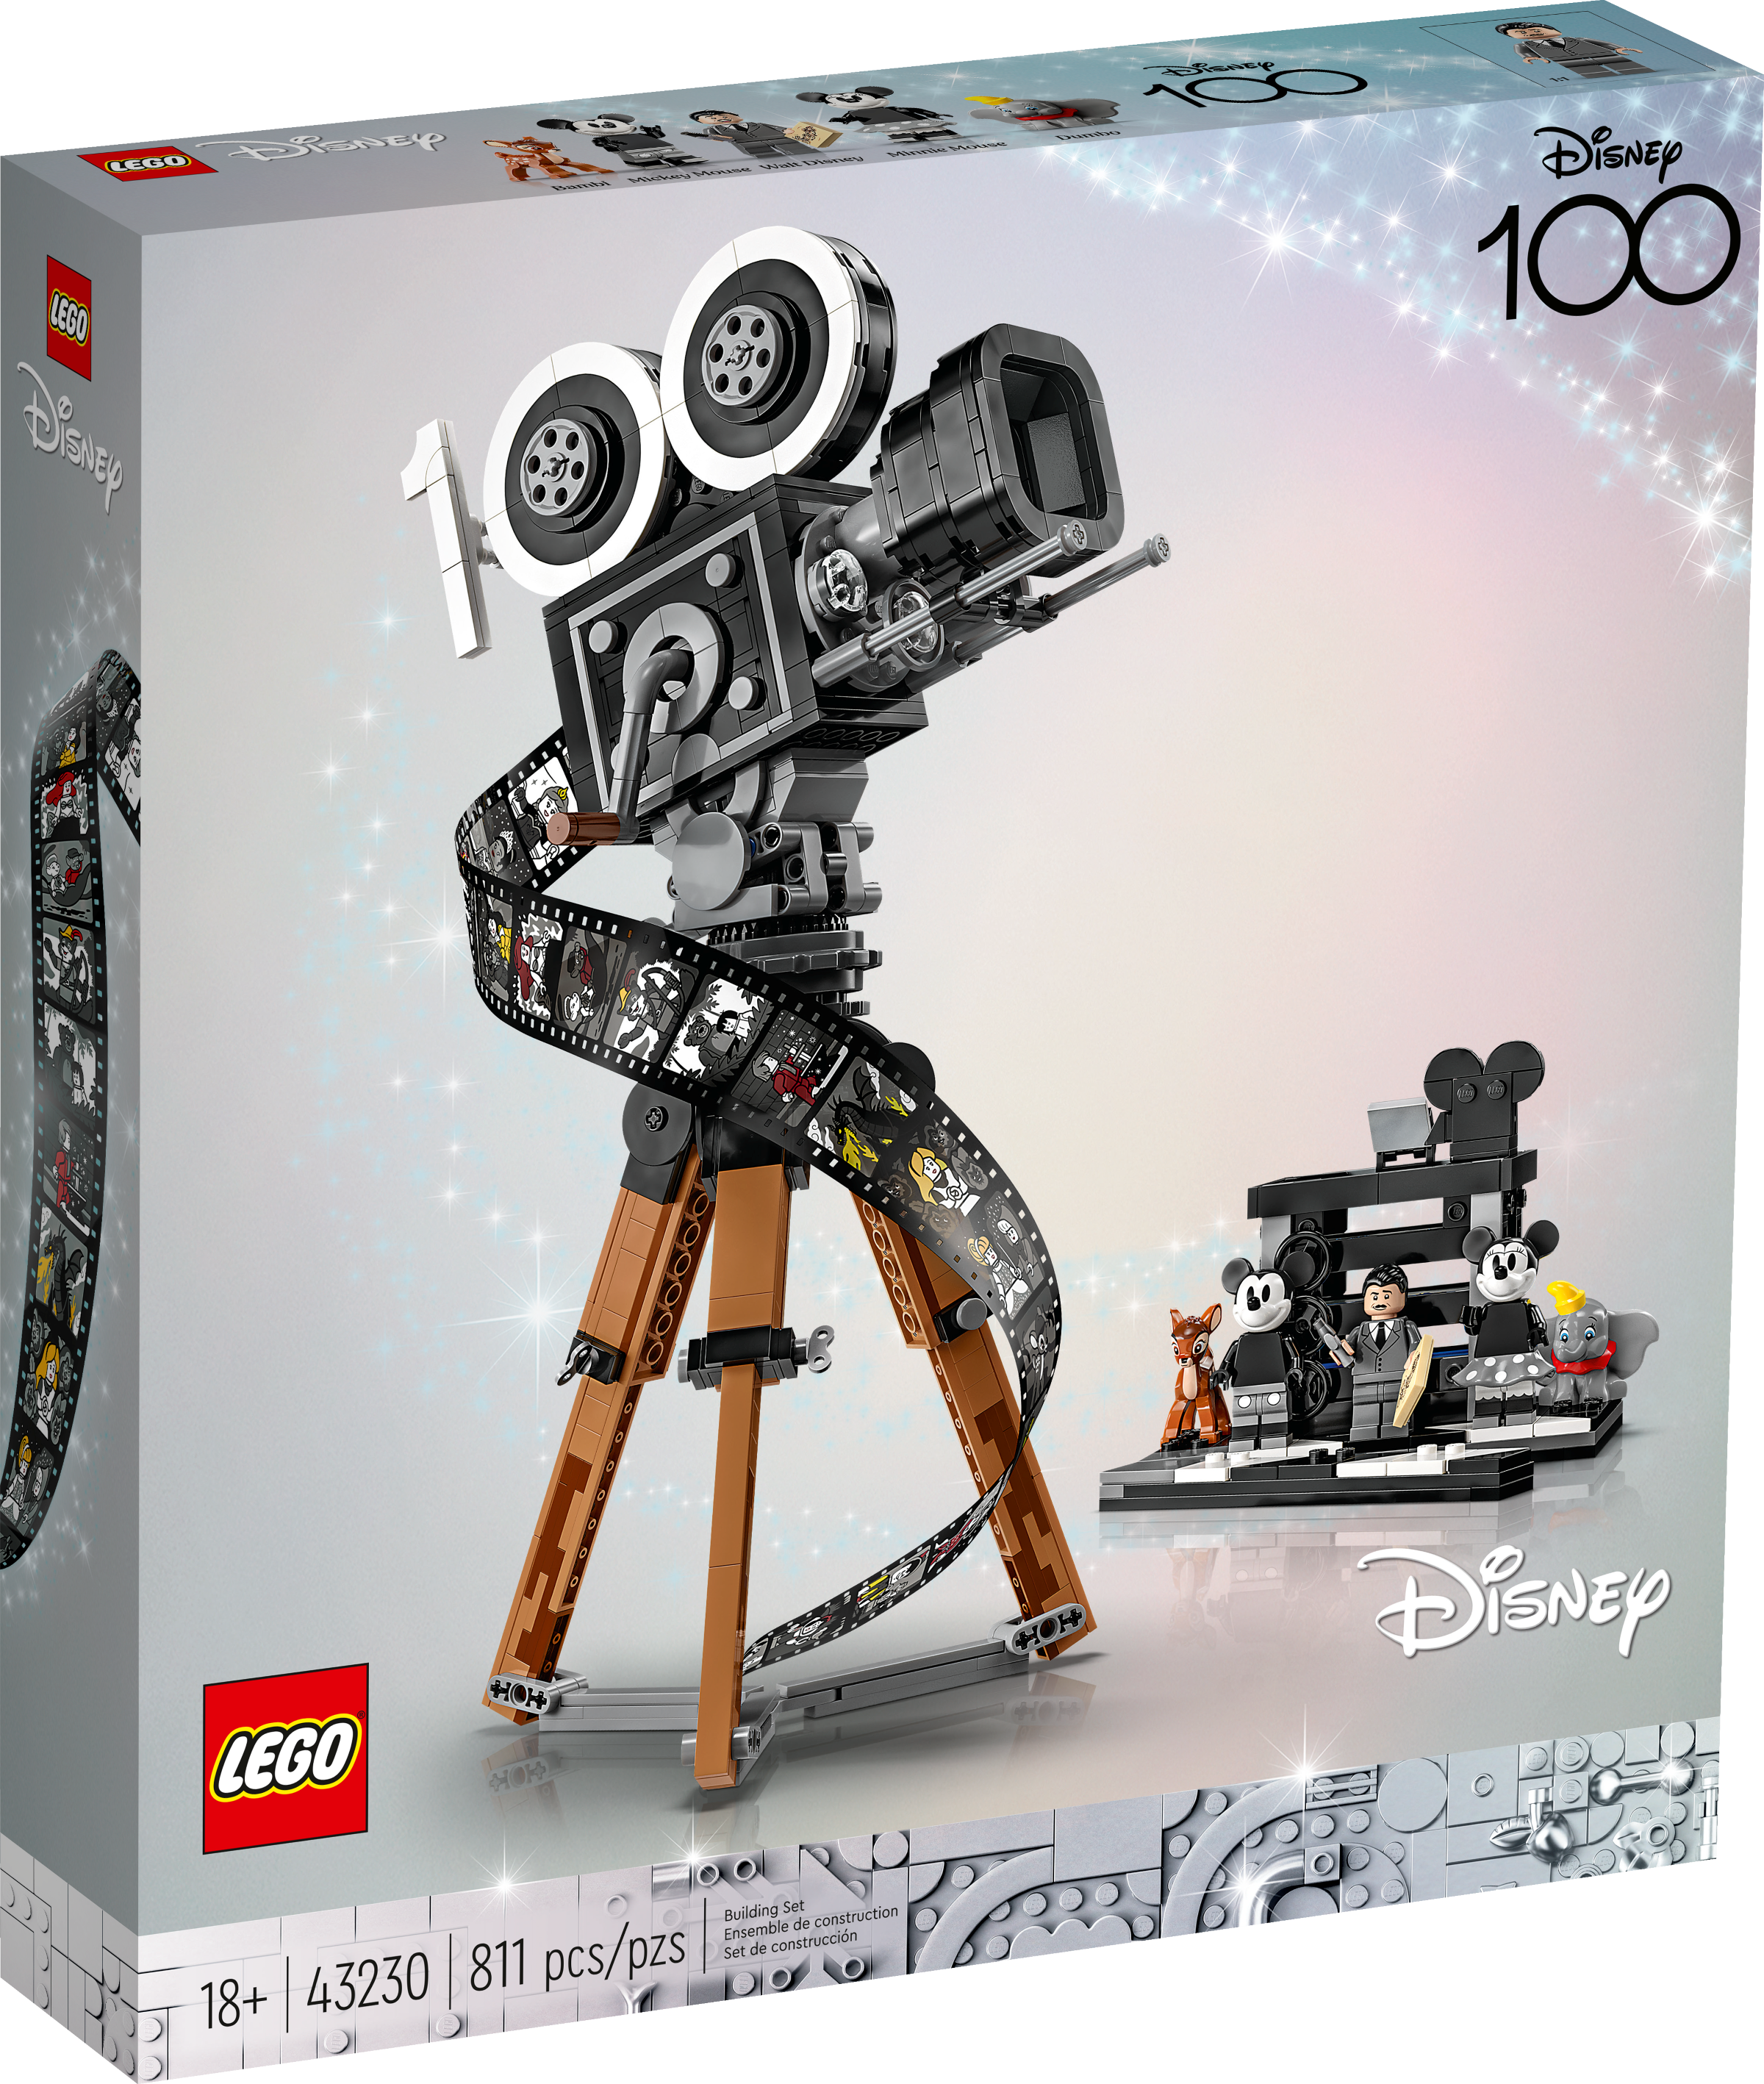 Lego Animation Station Video Camera, una cámara de vídeo de Lego